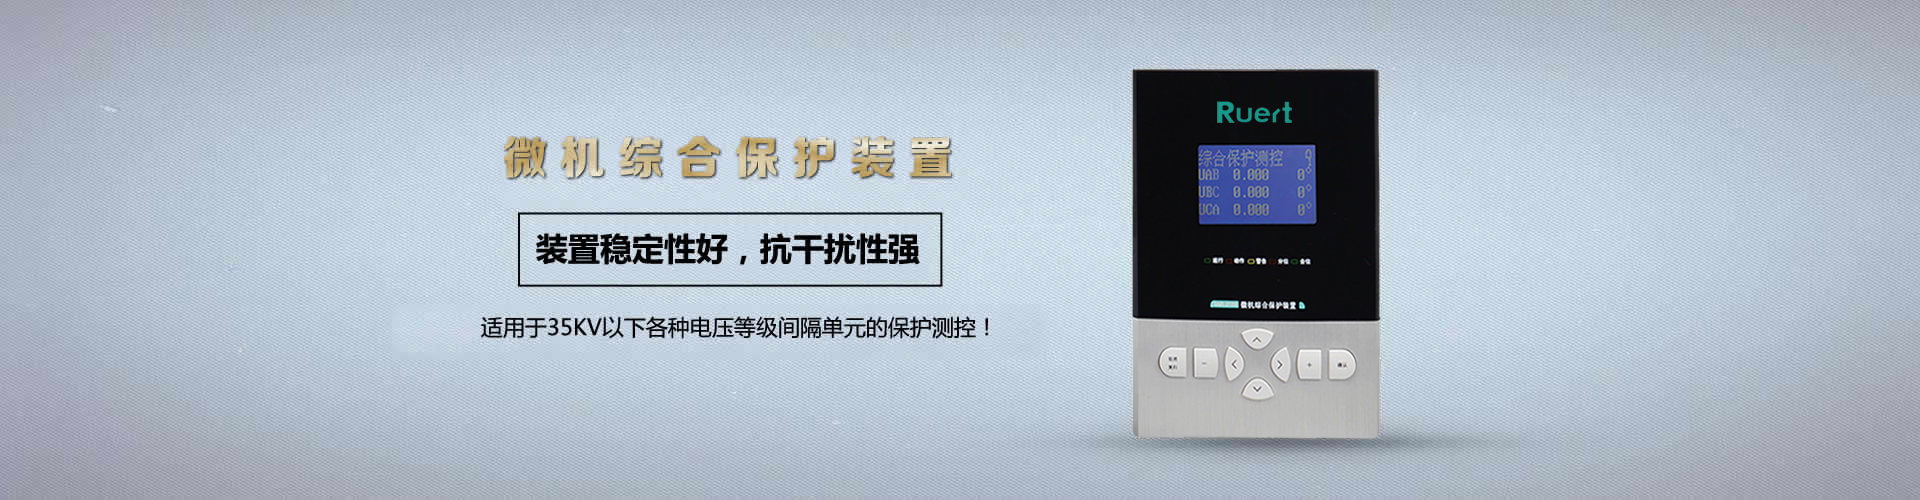 武汉武新电气科技股份有限公司